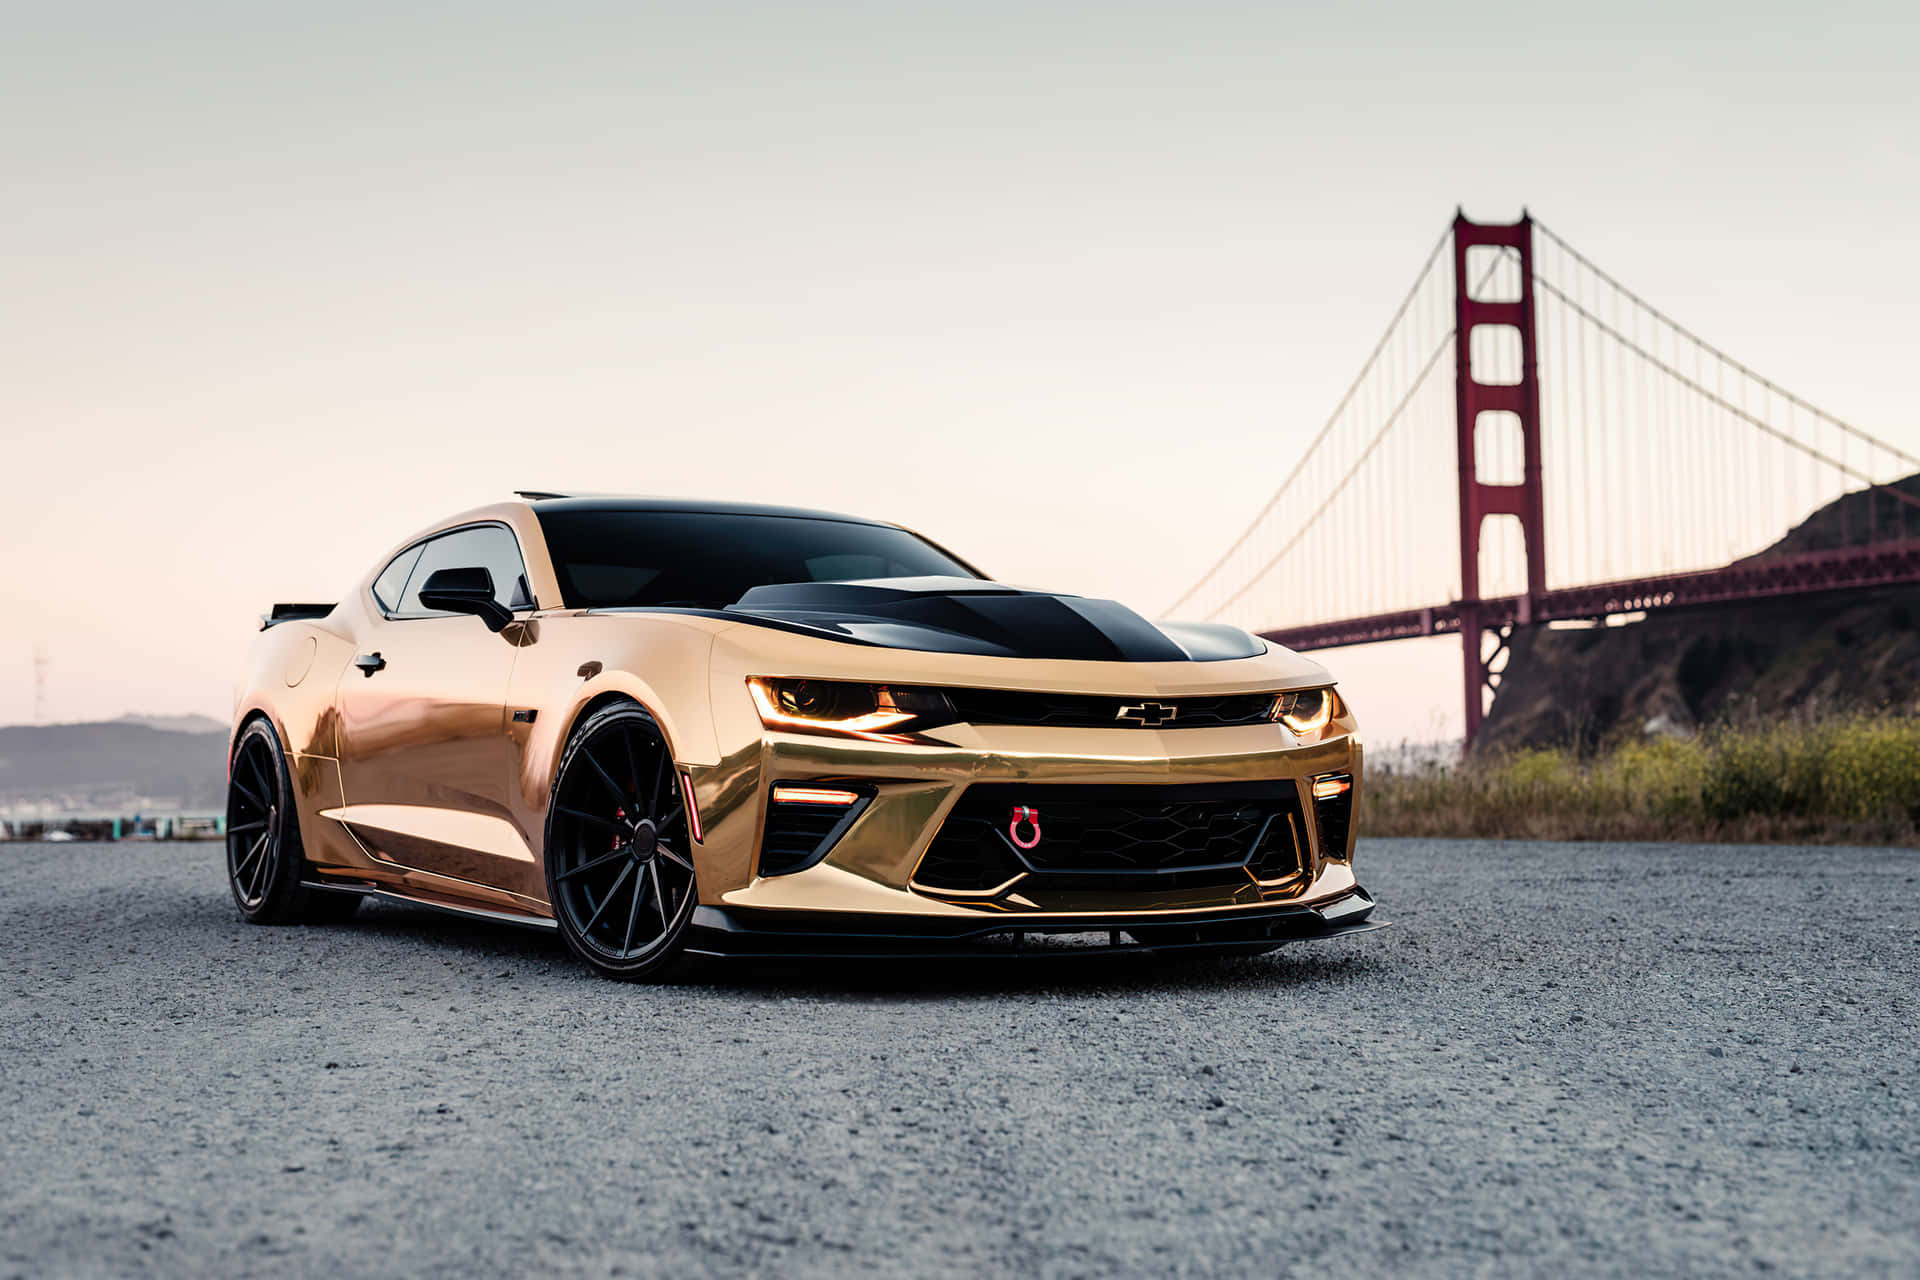 Gold Cars Chevrolet Golden Gate Bridge